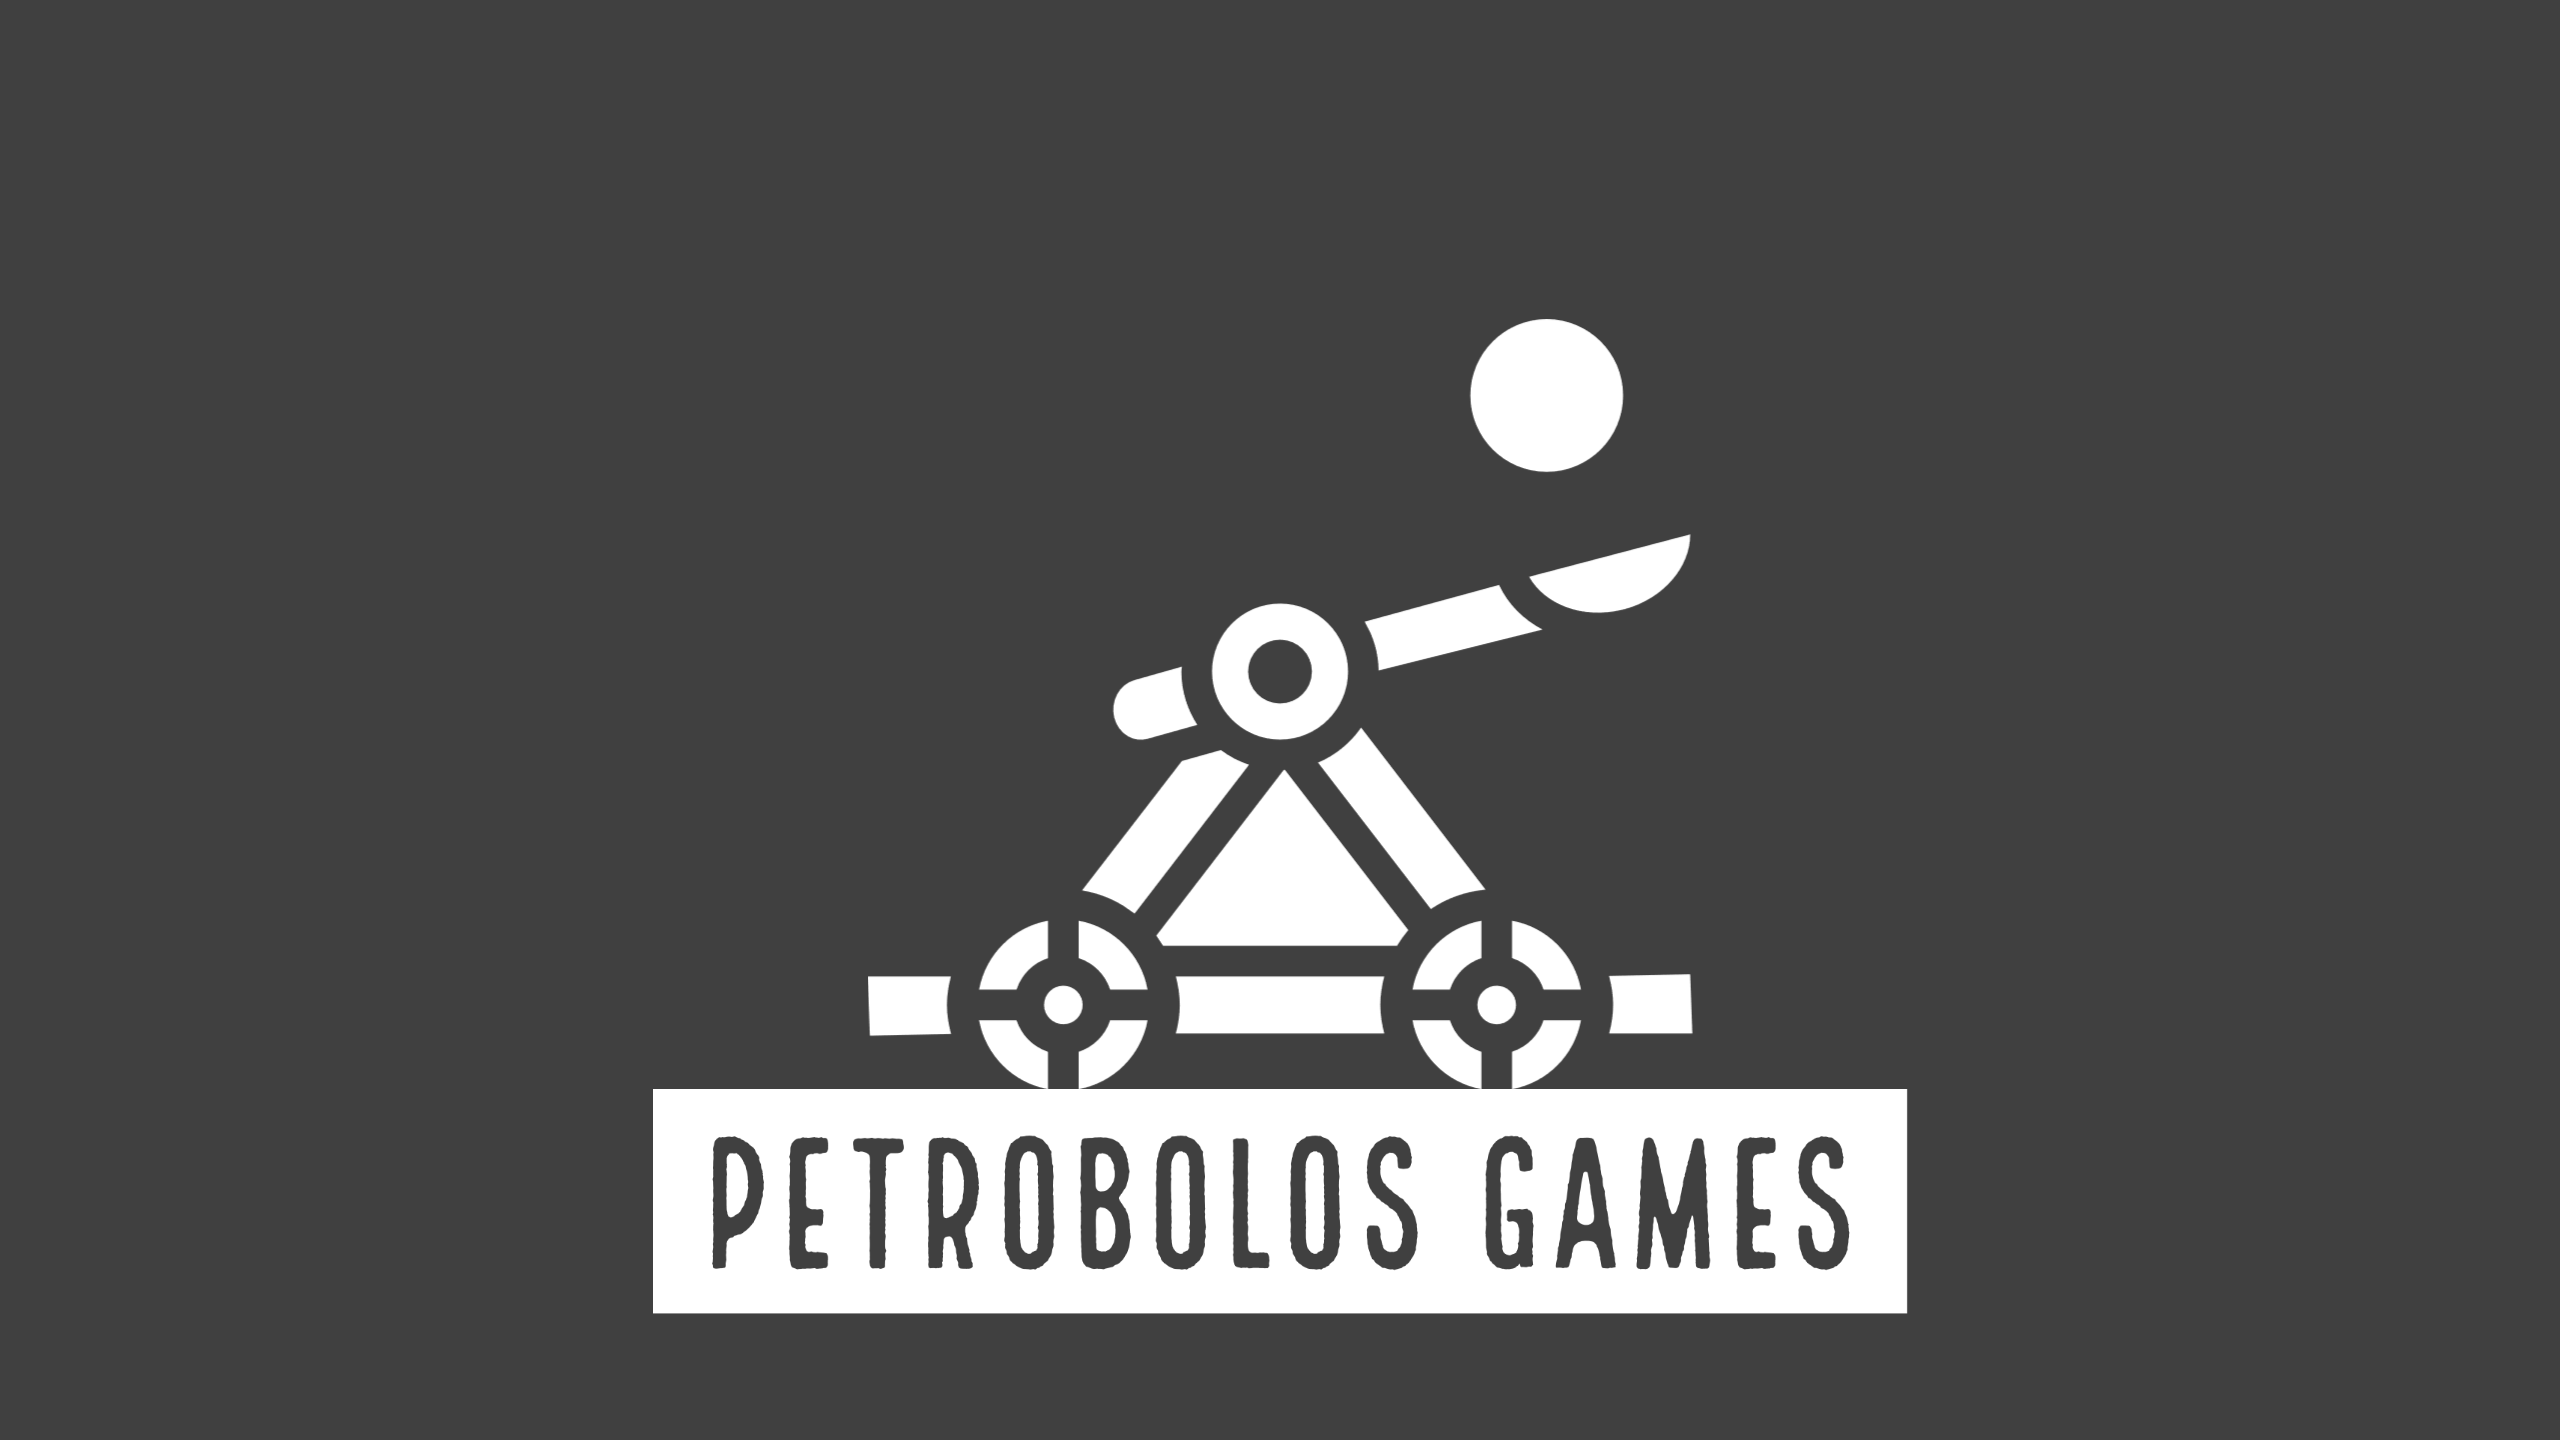 Petrobolos Games